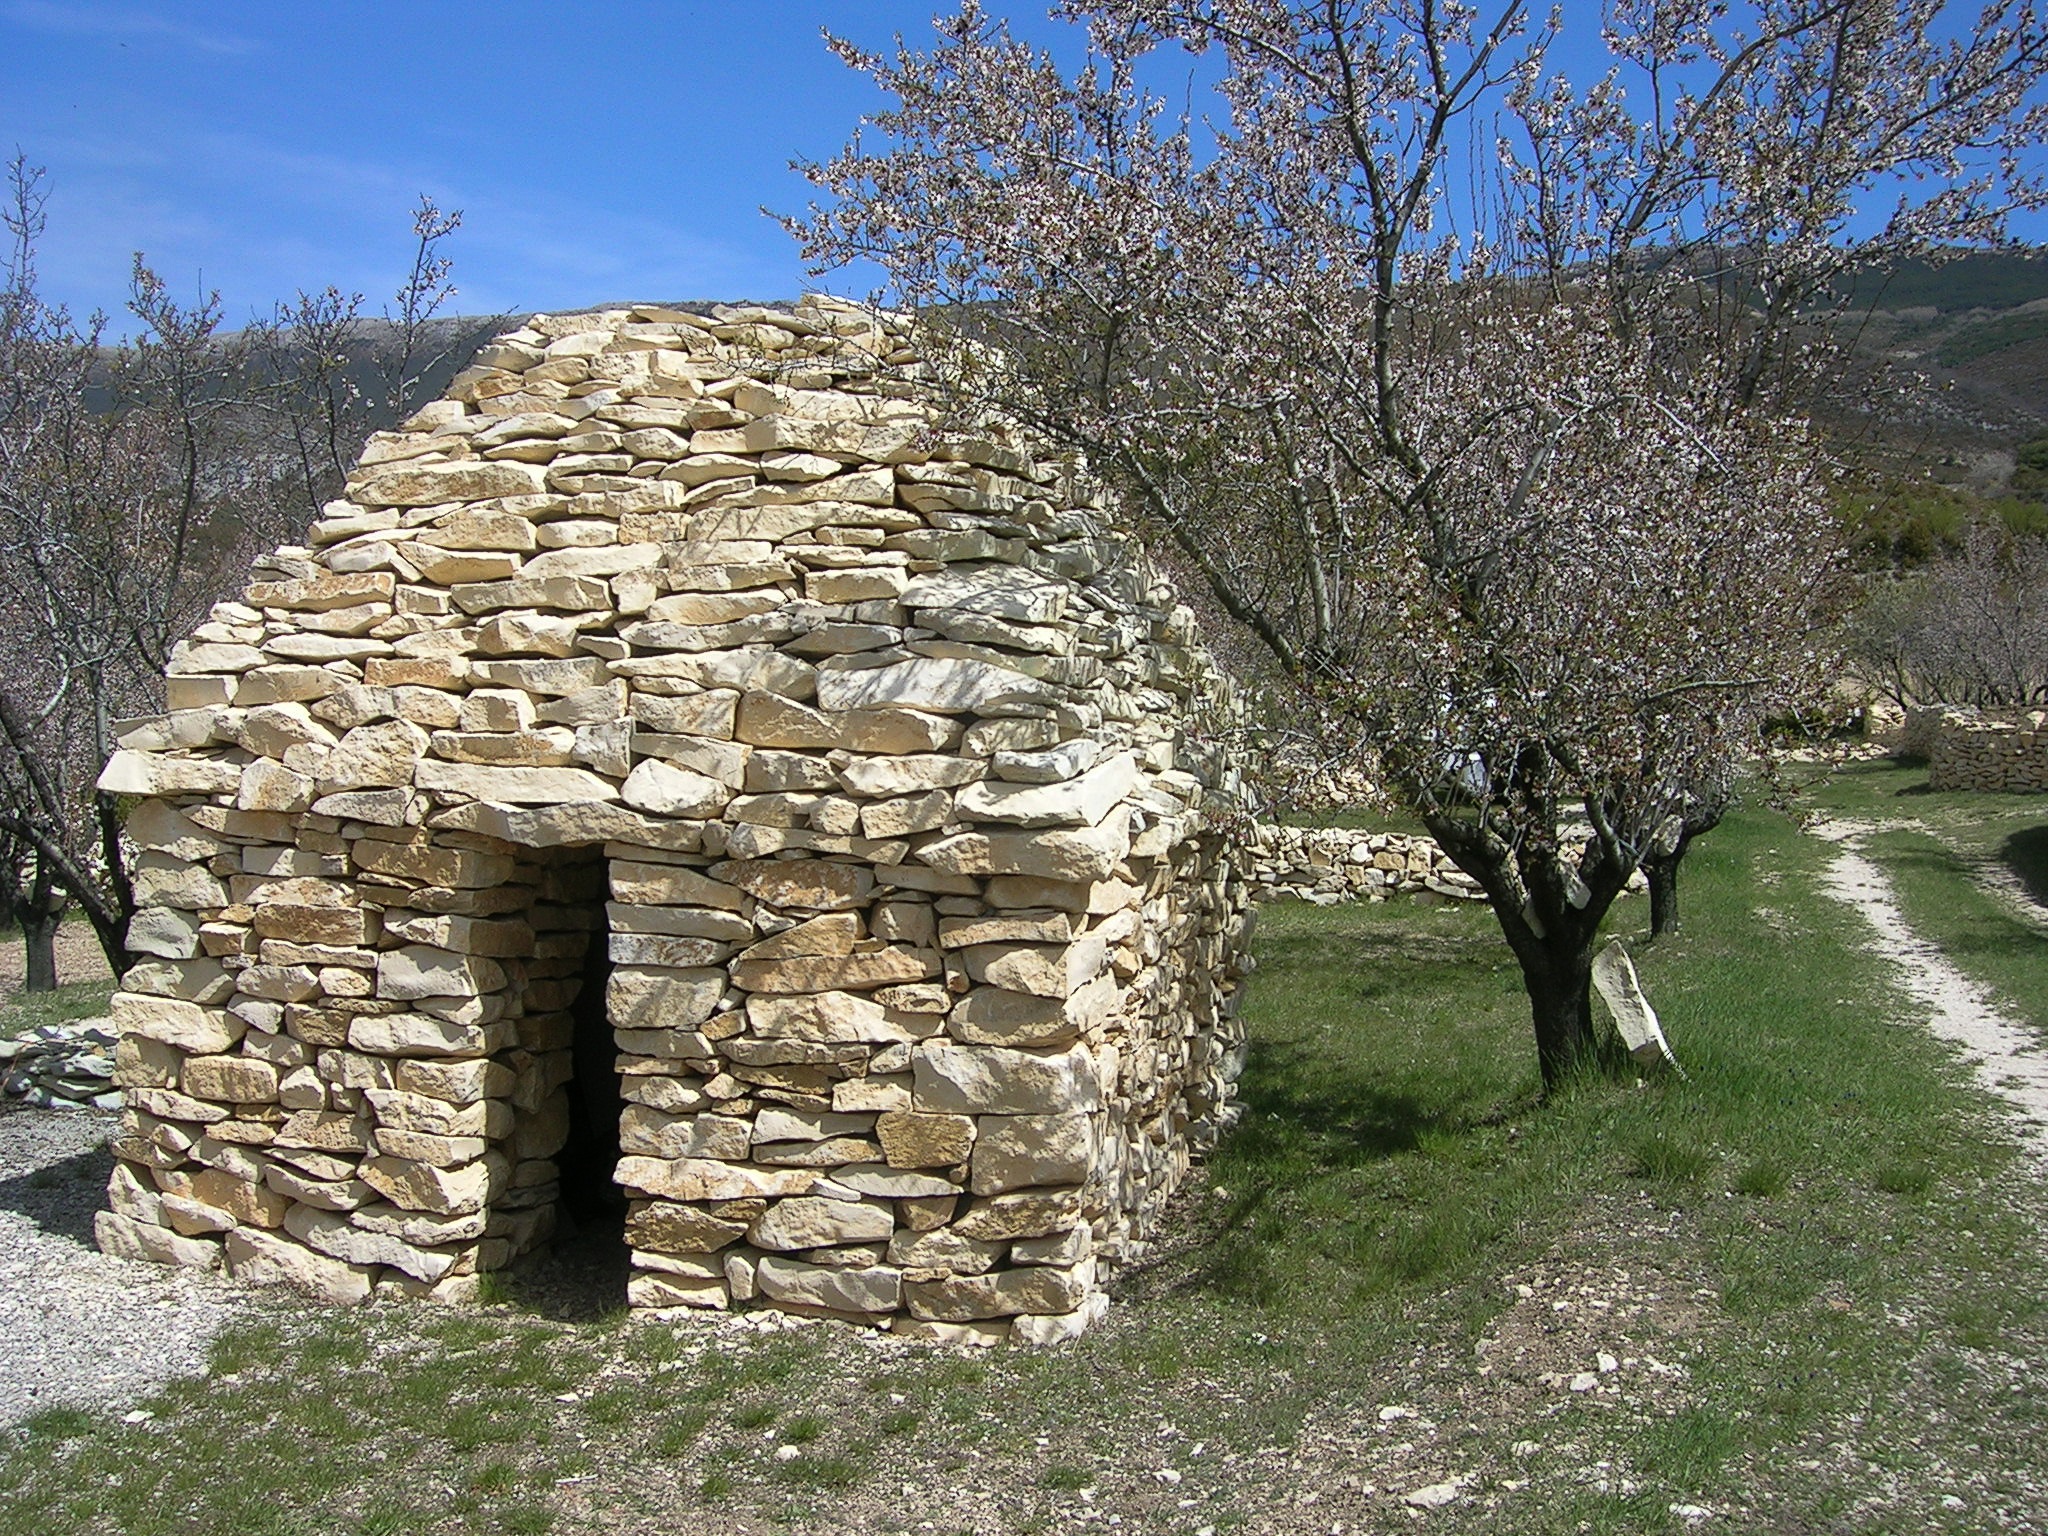 Stone shelter